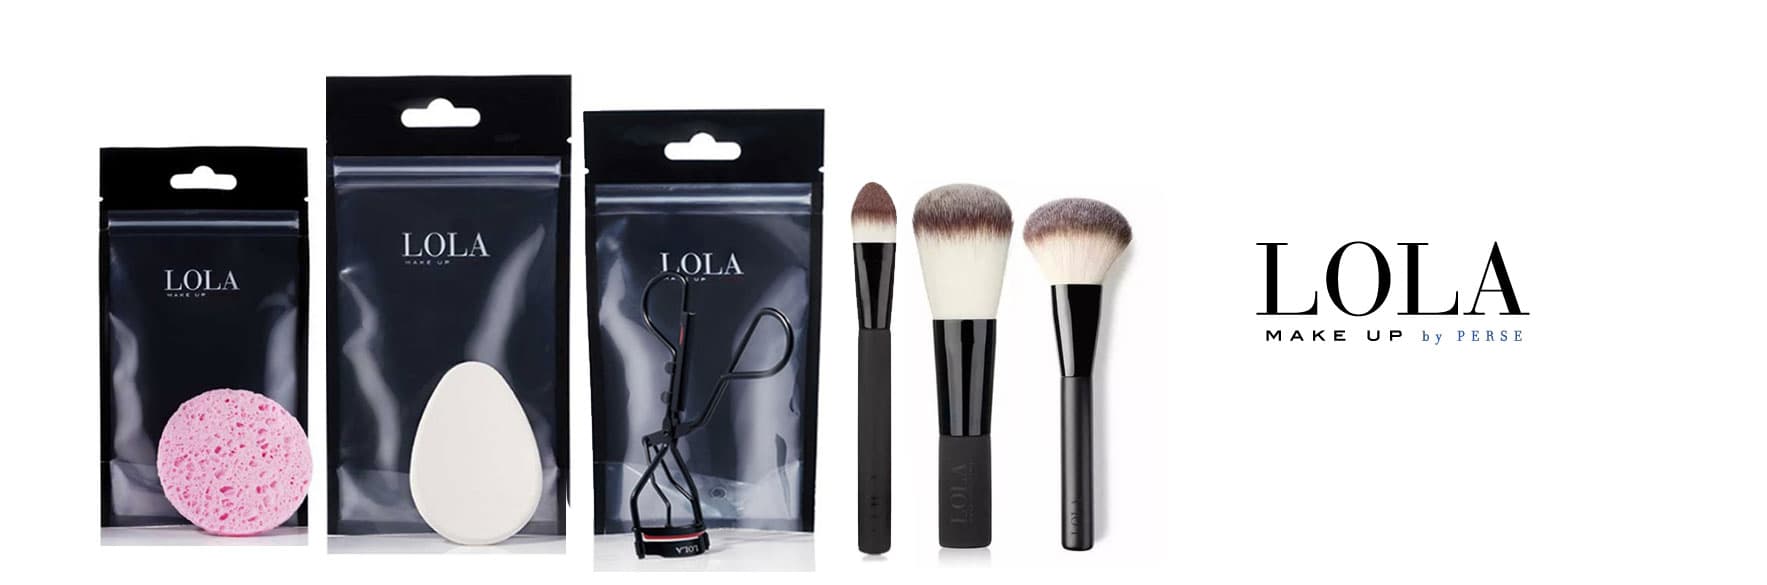 محصولات لولا LOLA ابزارهای آرایشی